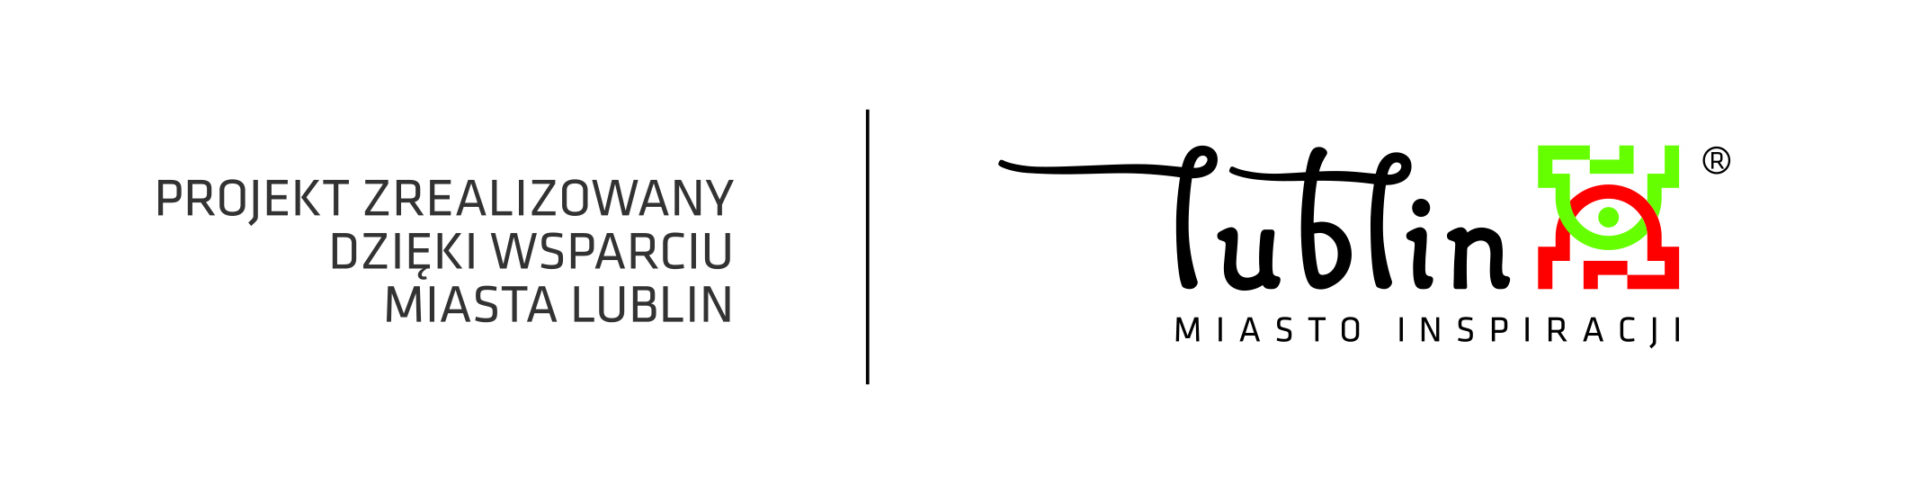 Logo Miasta lublin miasto inspiracji